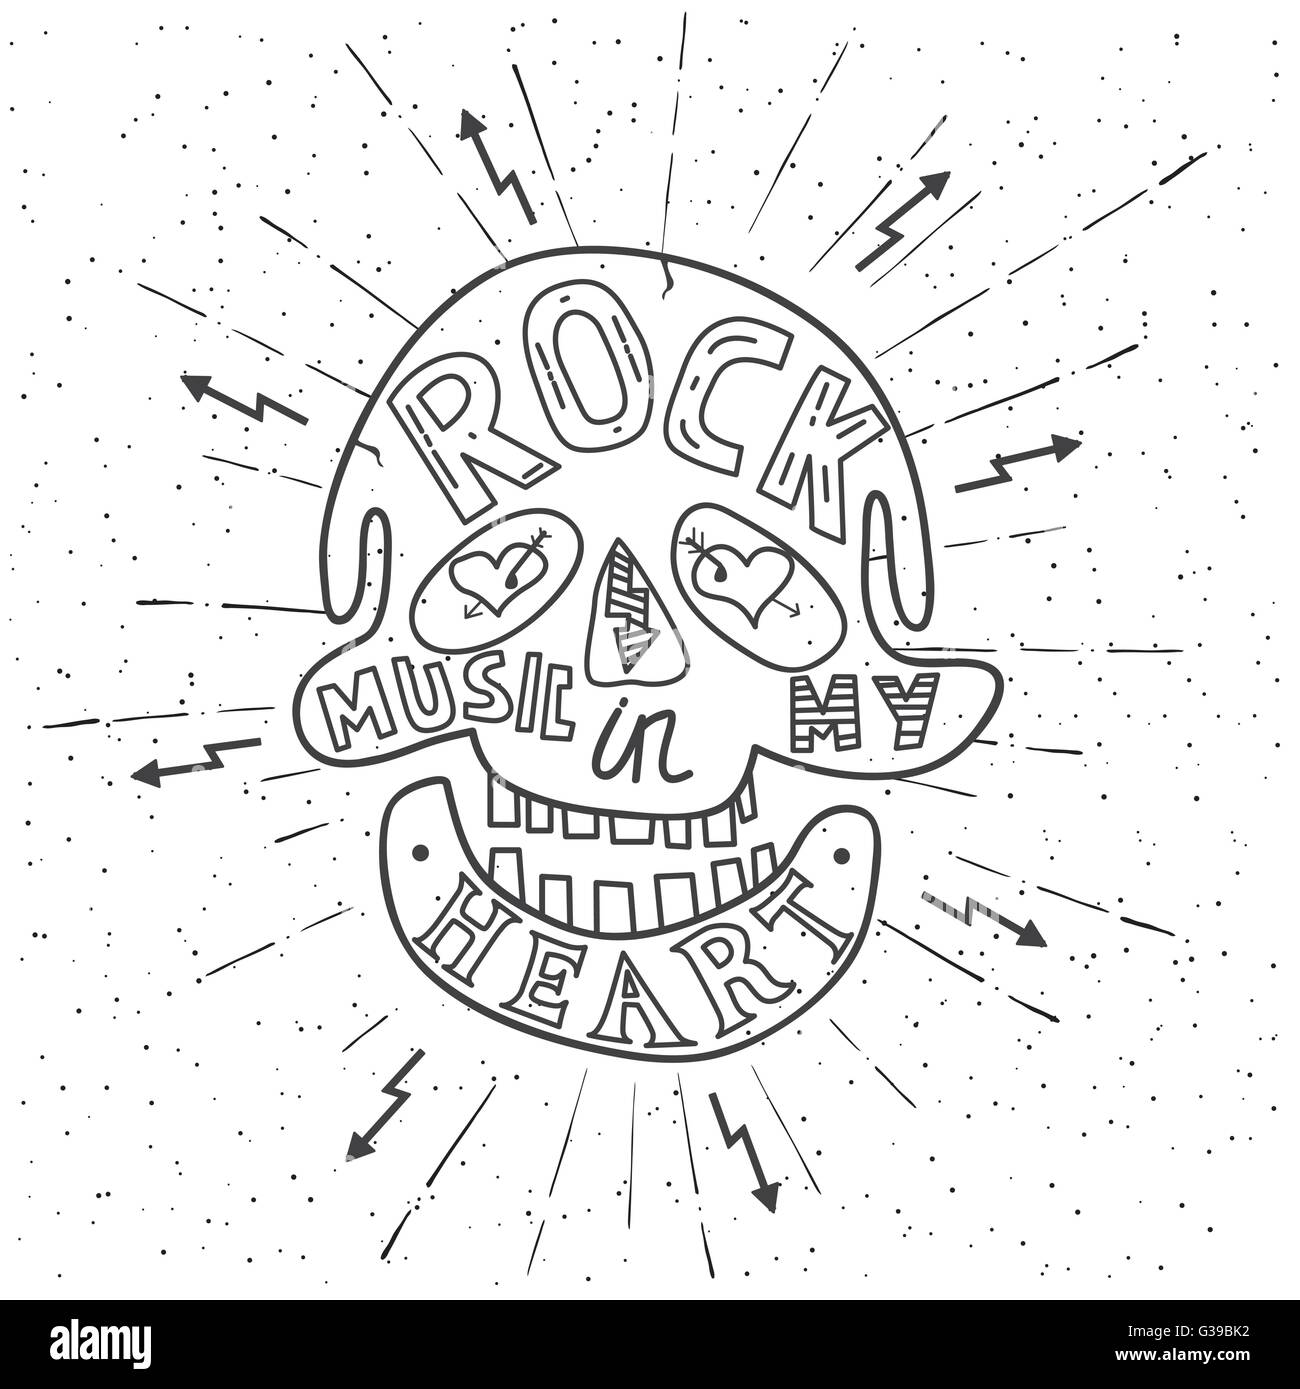 Rock-Musik in meinem Herzen. Handgezeichnete Design mit Totenkopf-Schriftzug. Typografie-Konzept für t-shirt-Design oder Web-Site. Vektor Stock Vektor